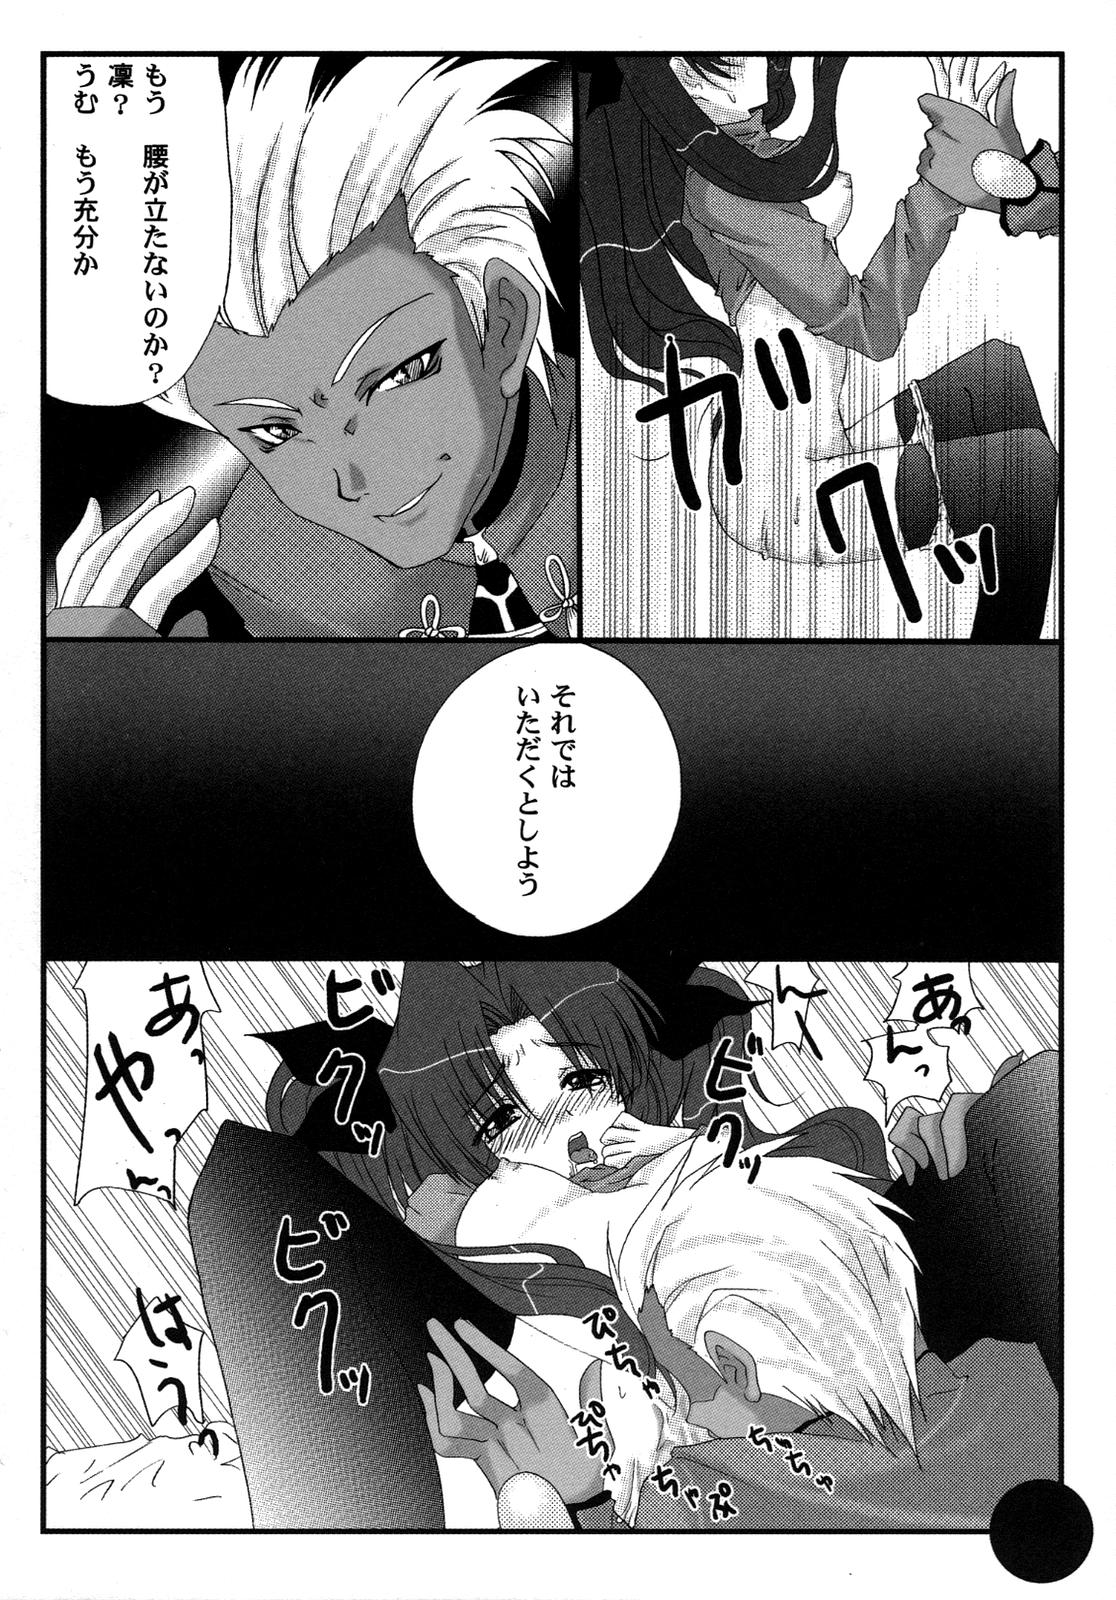 [アンソロジー] Fate騎士6 (Fate/Stay Night)